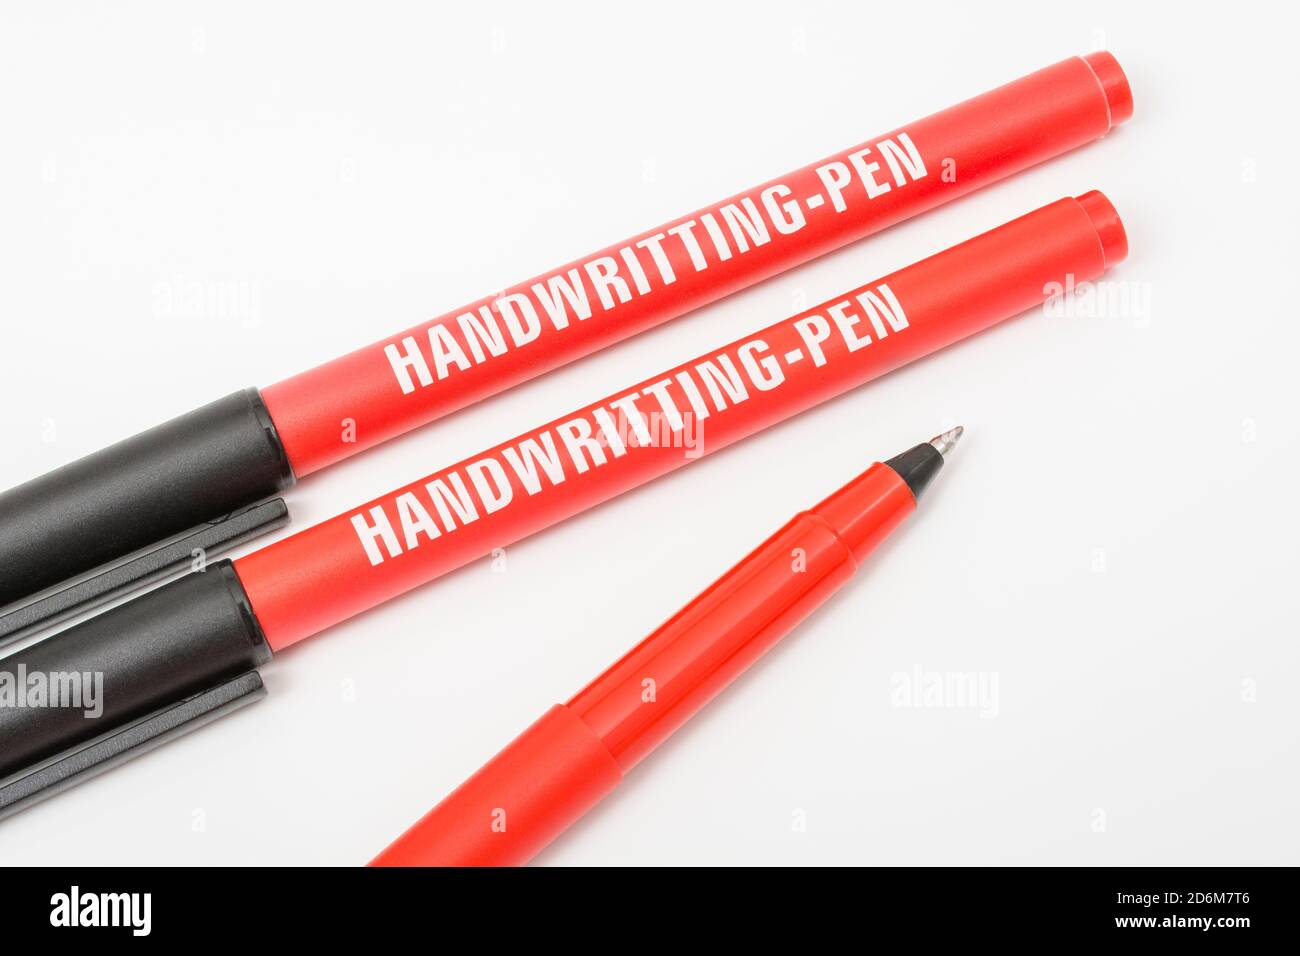 Eigene Marke Poundland Roller Stifte mit Wort 'Handschrift' falsch  geschrieben auf einem off-white b/g. Für Tippfehler, Druckfehler, schlechte  Schreibweise, schlechtes Englisch, Schreibfehler Stockfotografie - Alamy